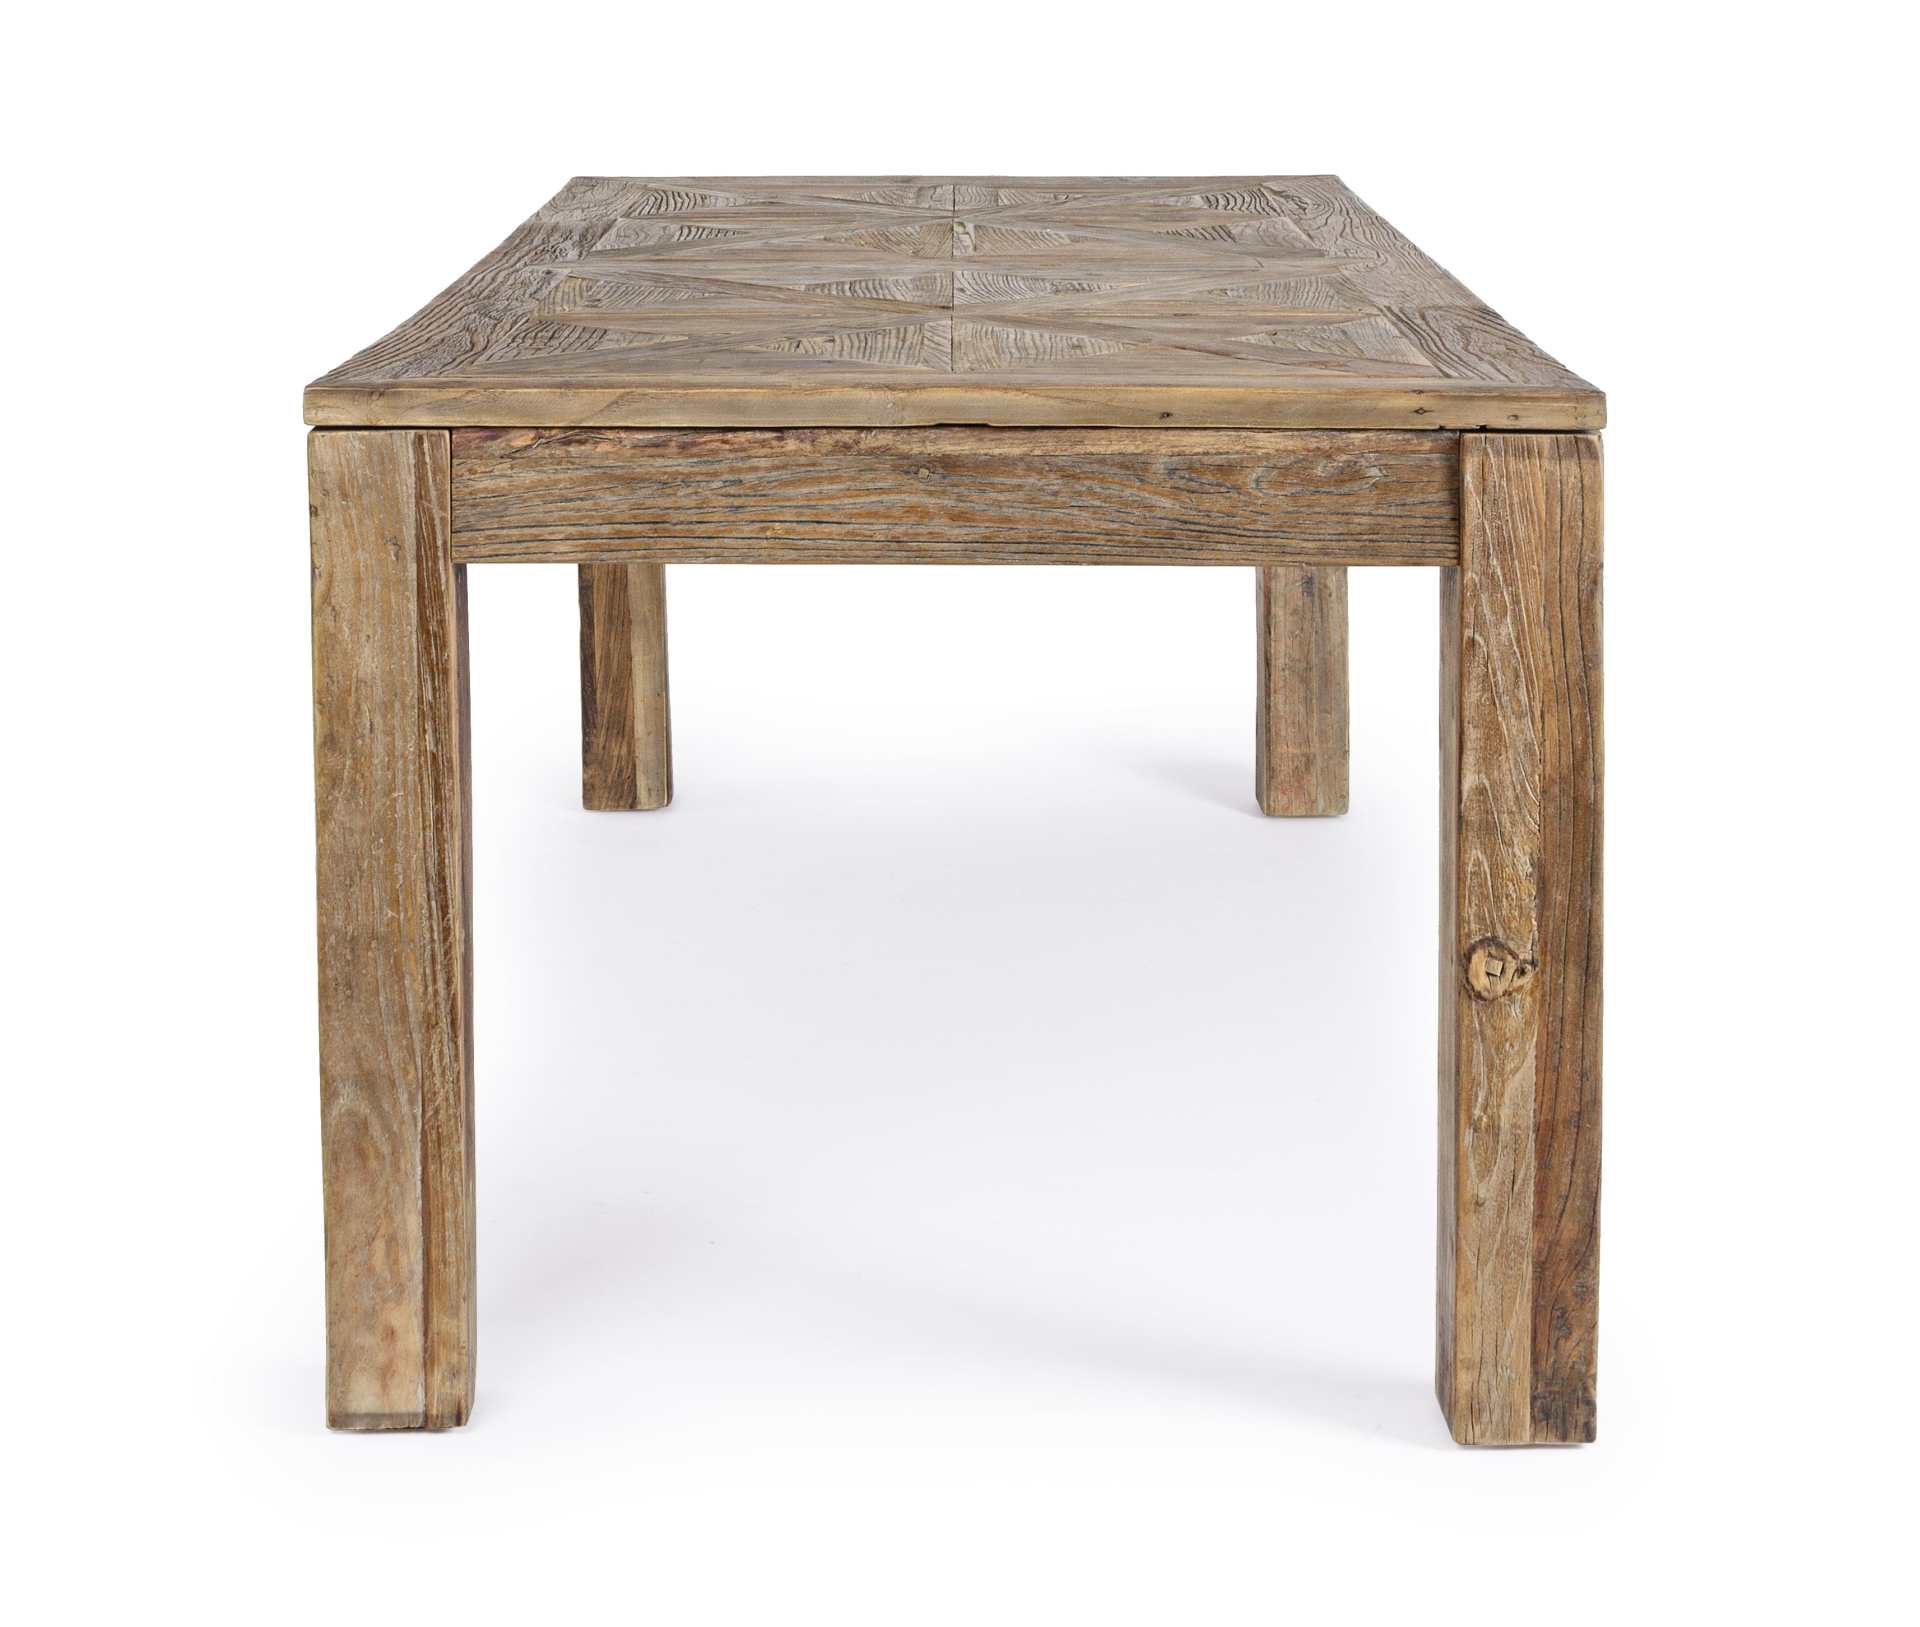 Der Esstisch Kaily überzeugt mit seinem klassischem Design gefertigt wurde er aus recyceltem Ulmenholz, welches einen natürlichen Farbton besitzt. Das Gestell des Tisches ist auch aus massivem Ulmenholz. Der Tisch besitzt eine Breite von 200 cm.